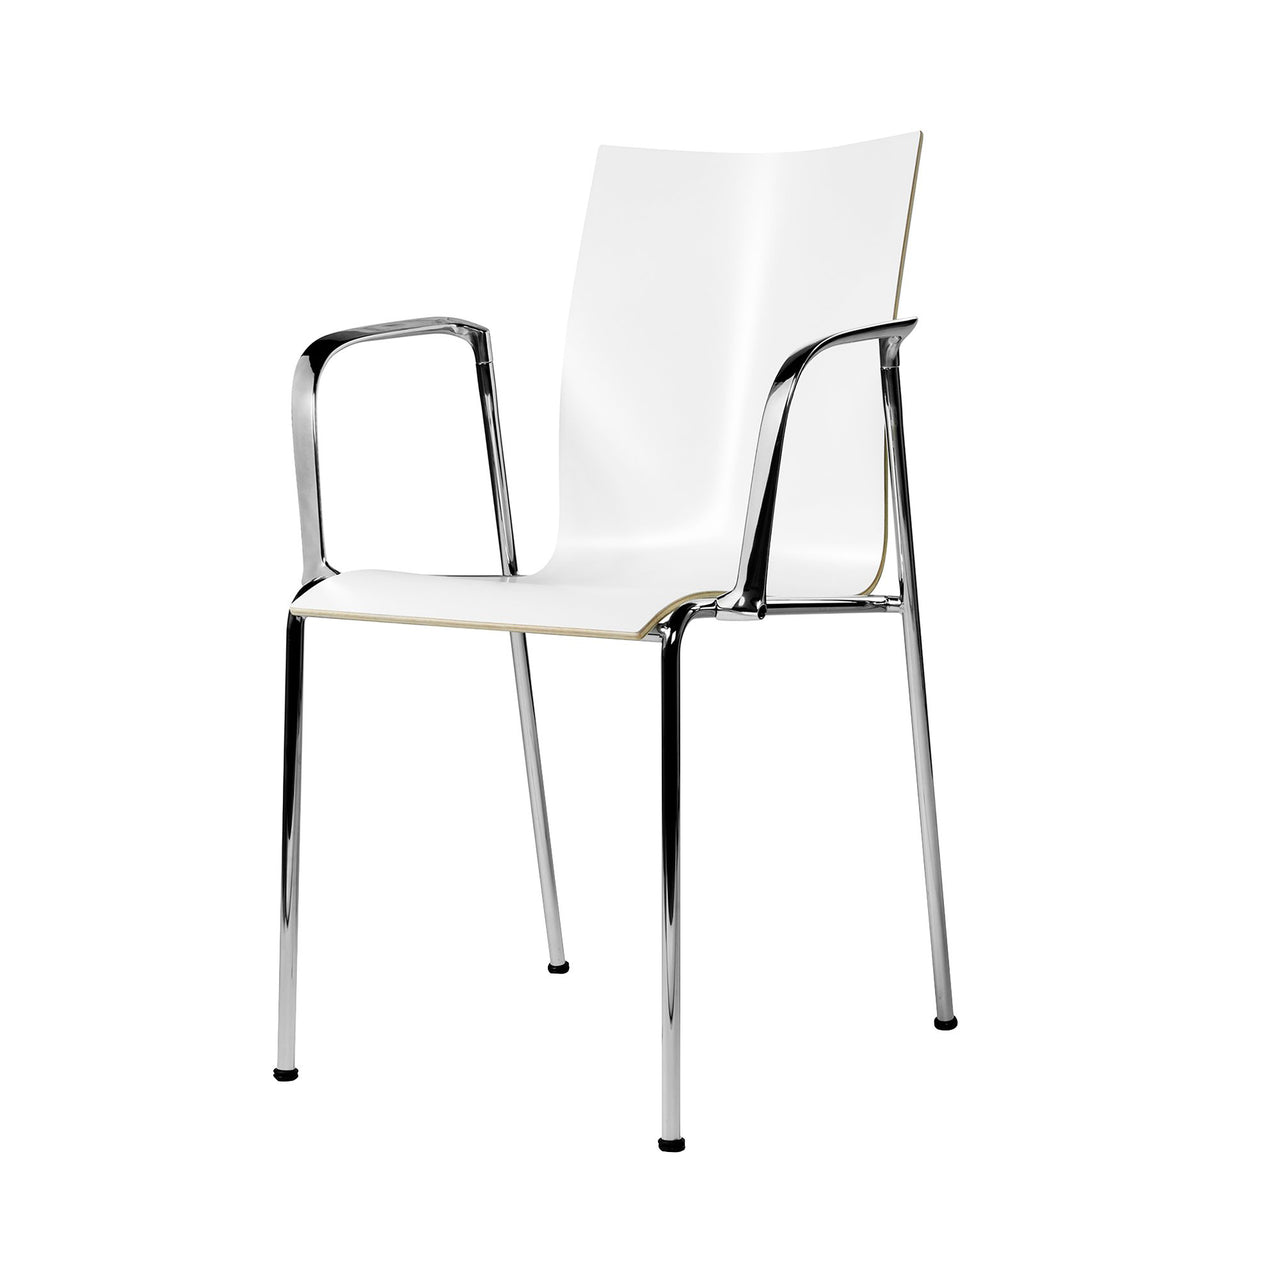 Chairik 110 High Armchair: 4-Legs + Melamine - White